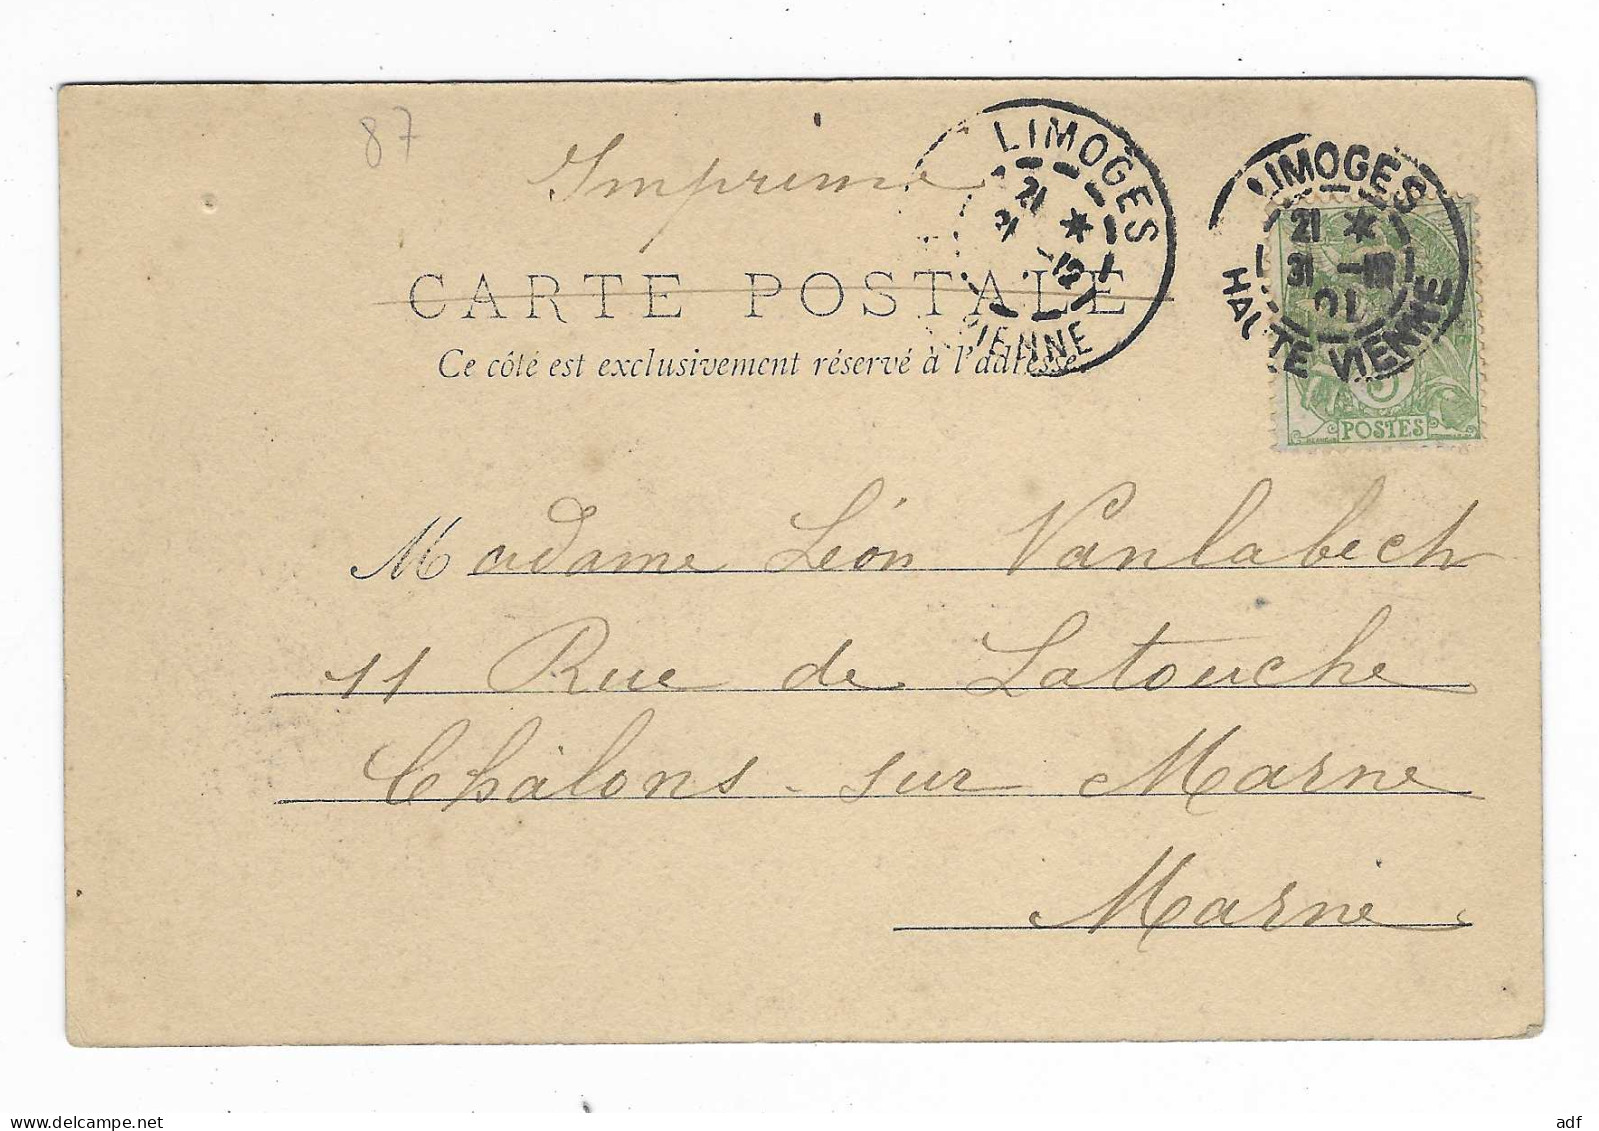 CPA MILLE BONS SOUHAITS DU LIMOUSIN, BUONNA ANNAD, 1901 1902 - Limousin